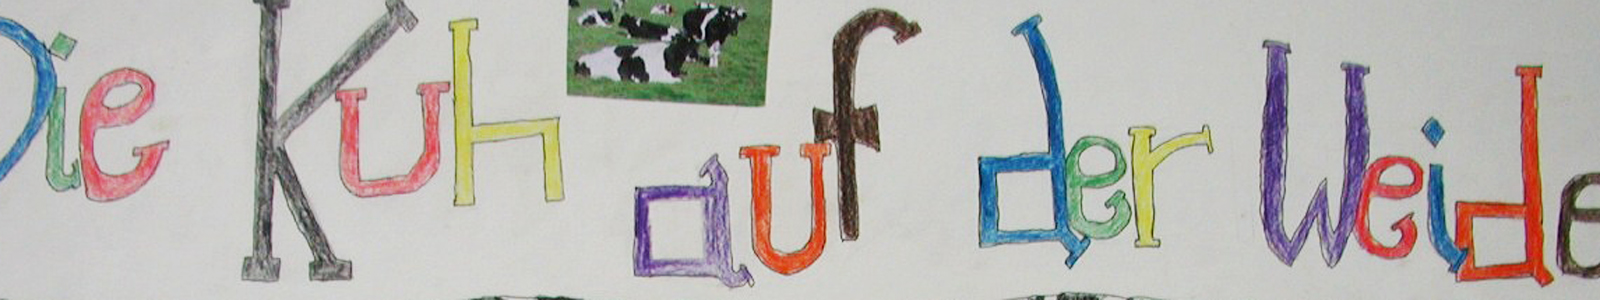 Schriftzug Kuh auf der Weide mit bunten Stiften geschrieben ©DLR